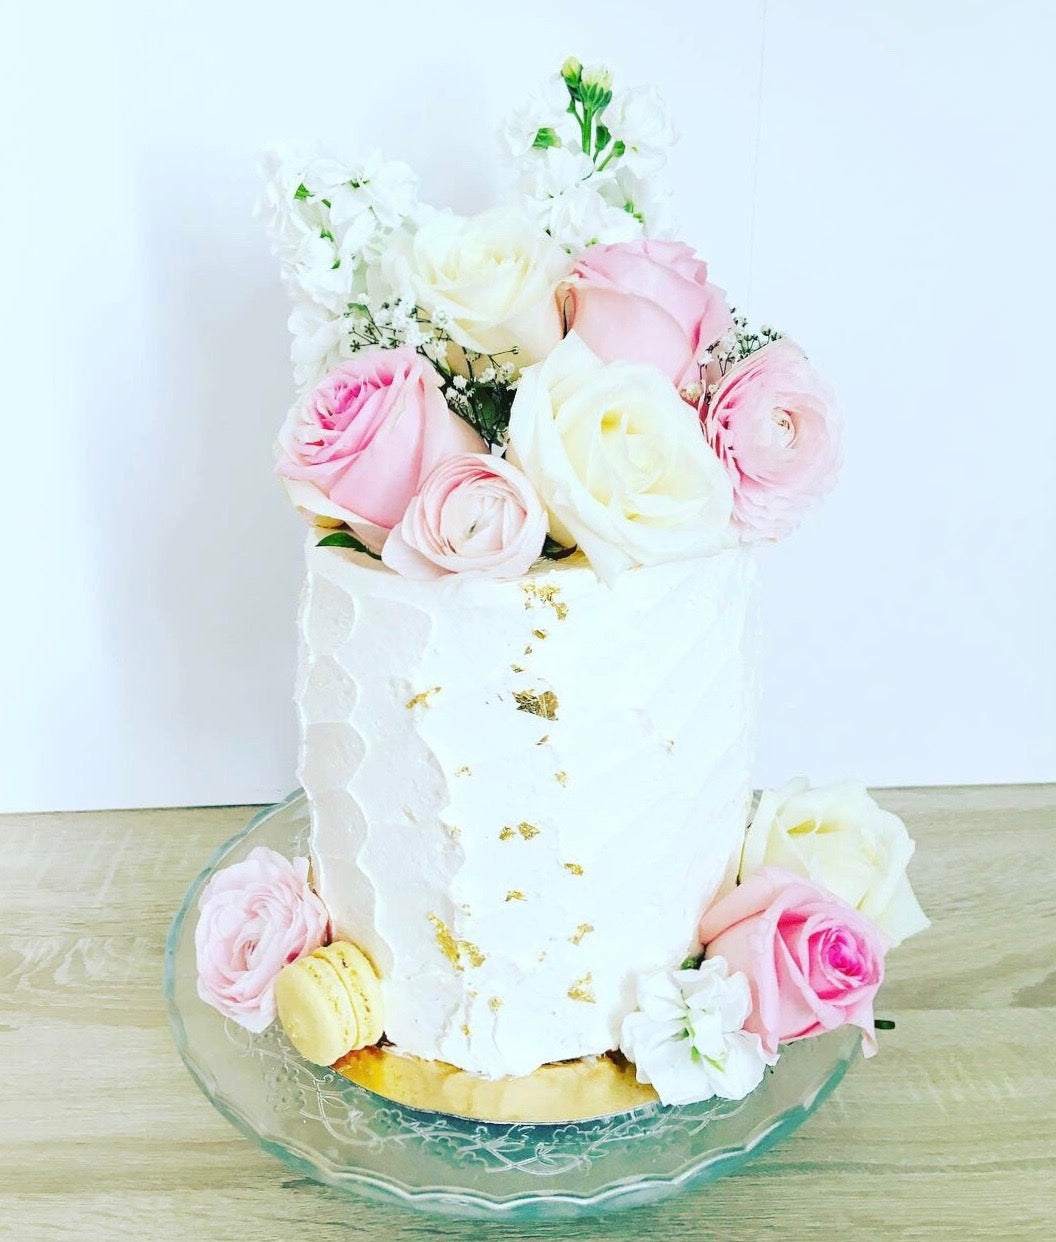 Layer cake "Bouquet de fleurs" 25 personnes